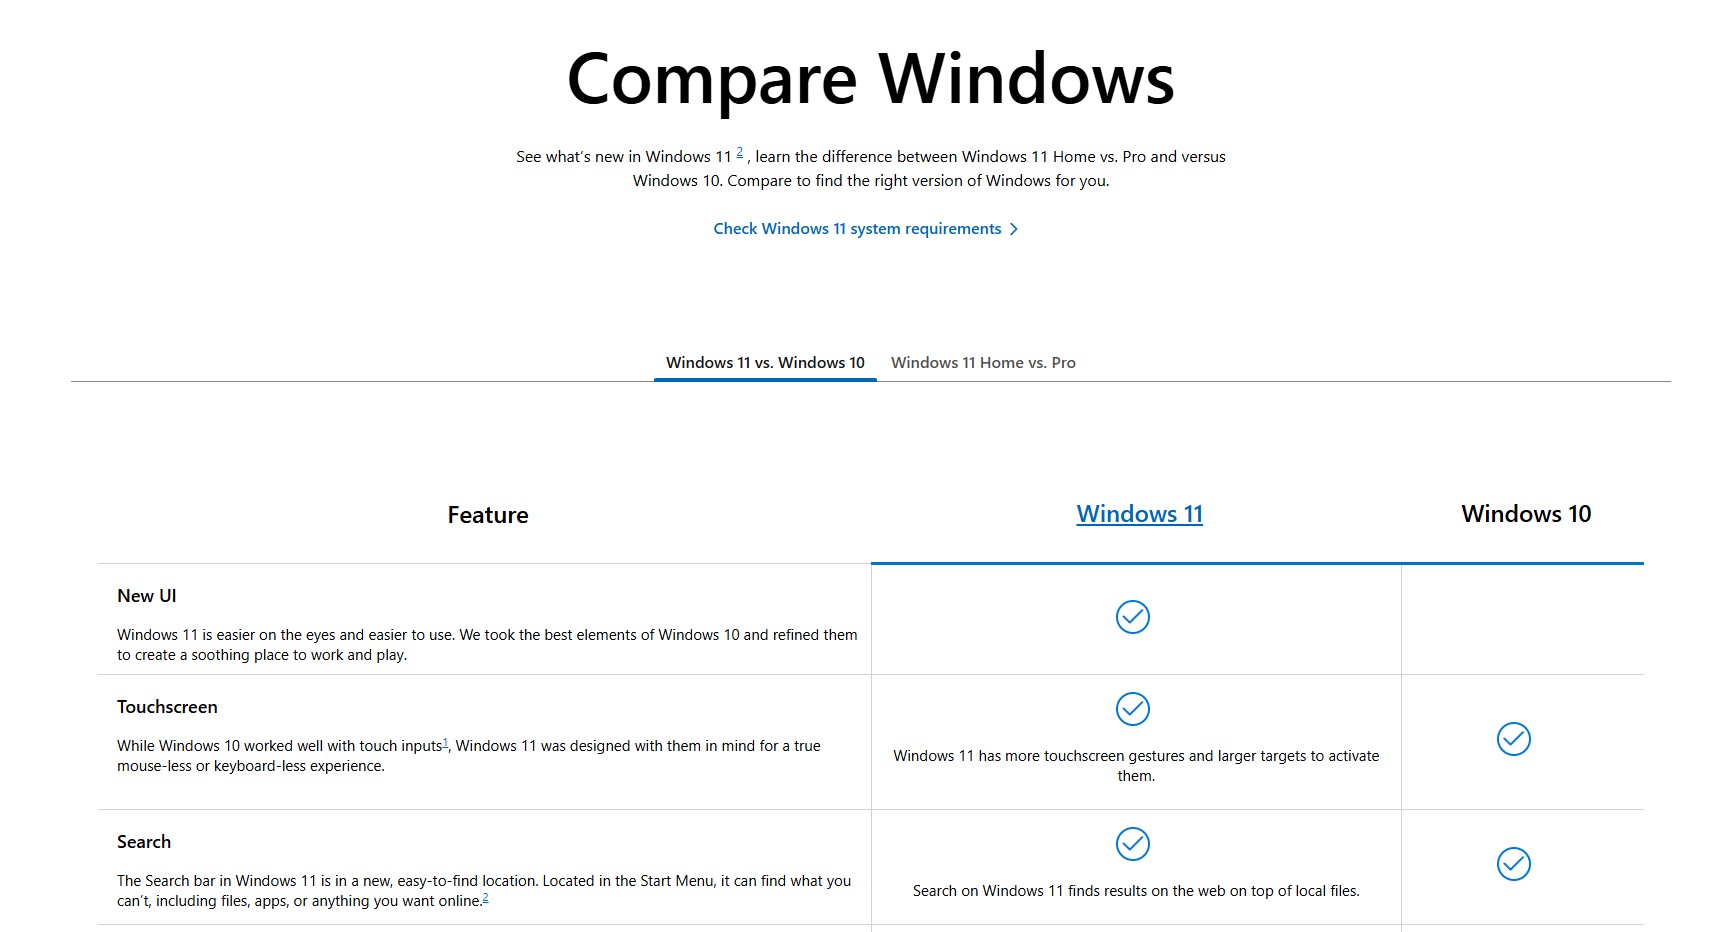 Thị phần giảm sút, Microsoft tiếp tục tìm cách thuyết phục người dùng rằng Windows 11 tốt hơn Windows 10- Ảnh 1.